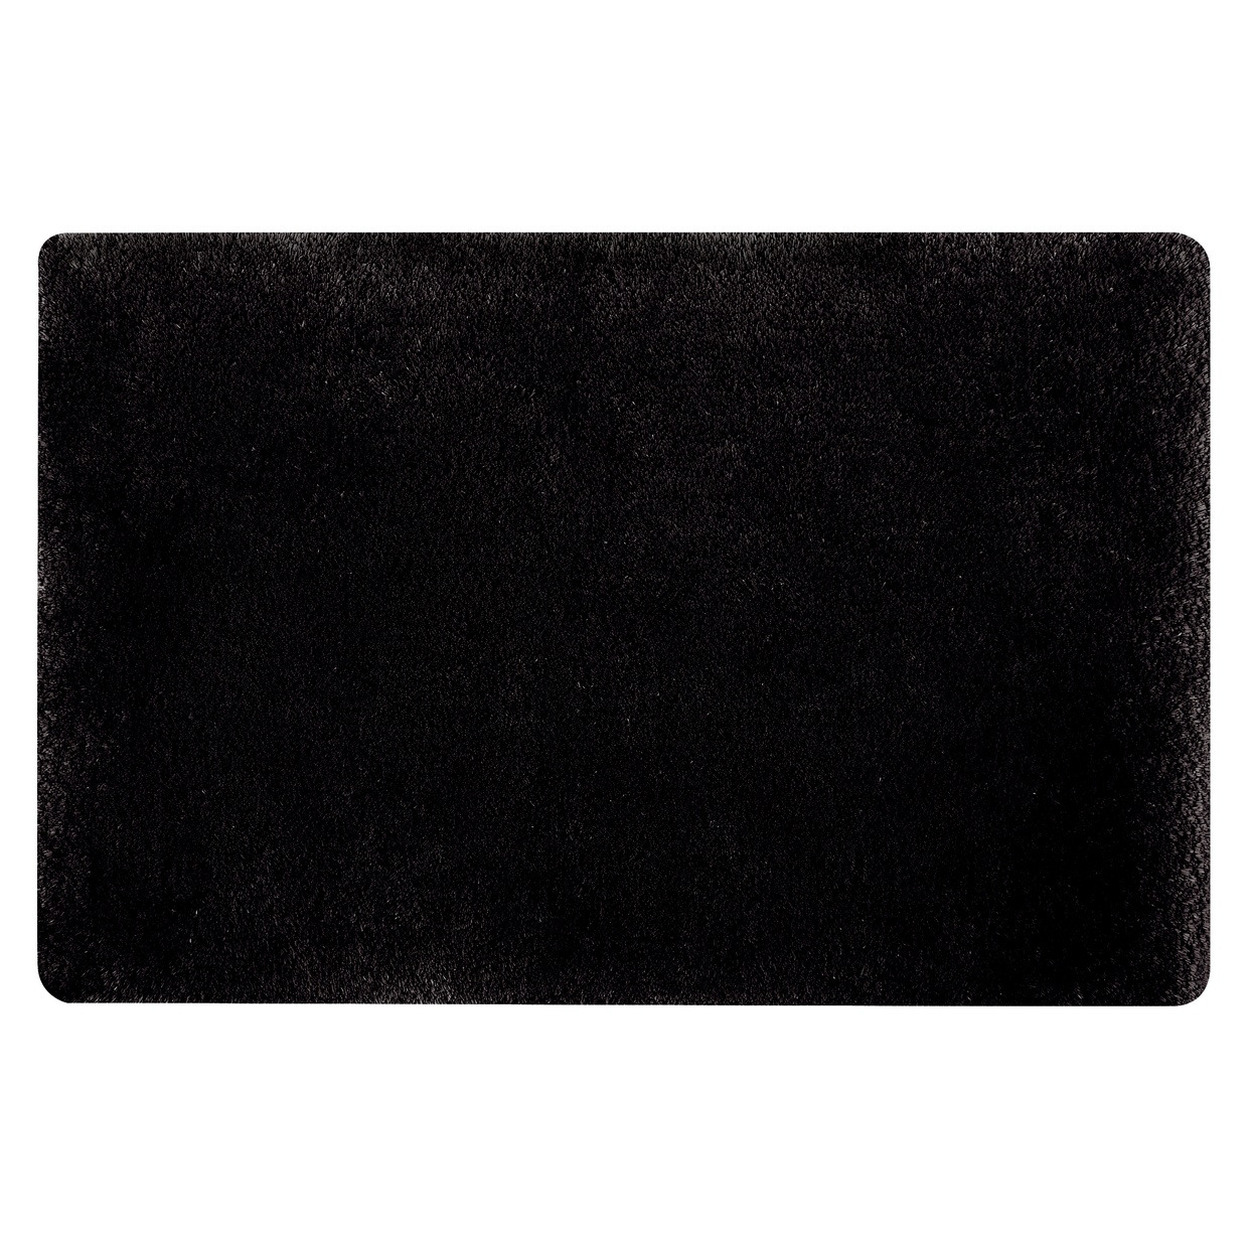 Spirella badkamer vloer kleedje-badmat tapijt hoogpolig en luxe uitvoering zwart 60 x 90